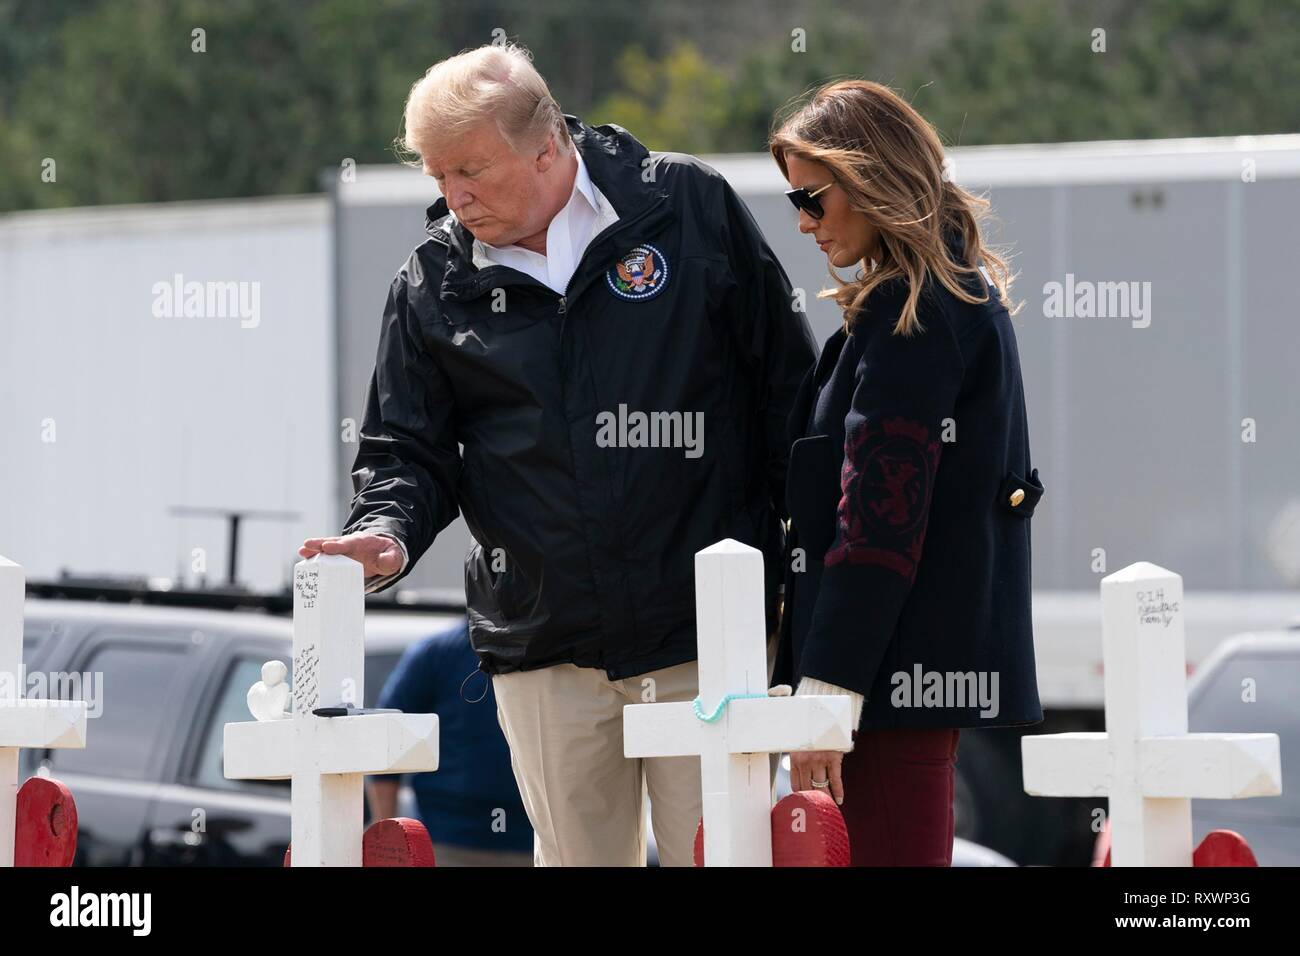 U.S presidente Donald Trump e la First Lady Melania Trump visualizza attraversa a un ripiego memorial Marzo 8, 2019 in Opelika, Alabama. La regione è stata colpita da un tornado il 3 marzo uccidendo 23 persone. Foto Stock